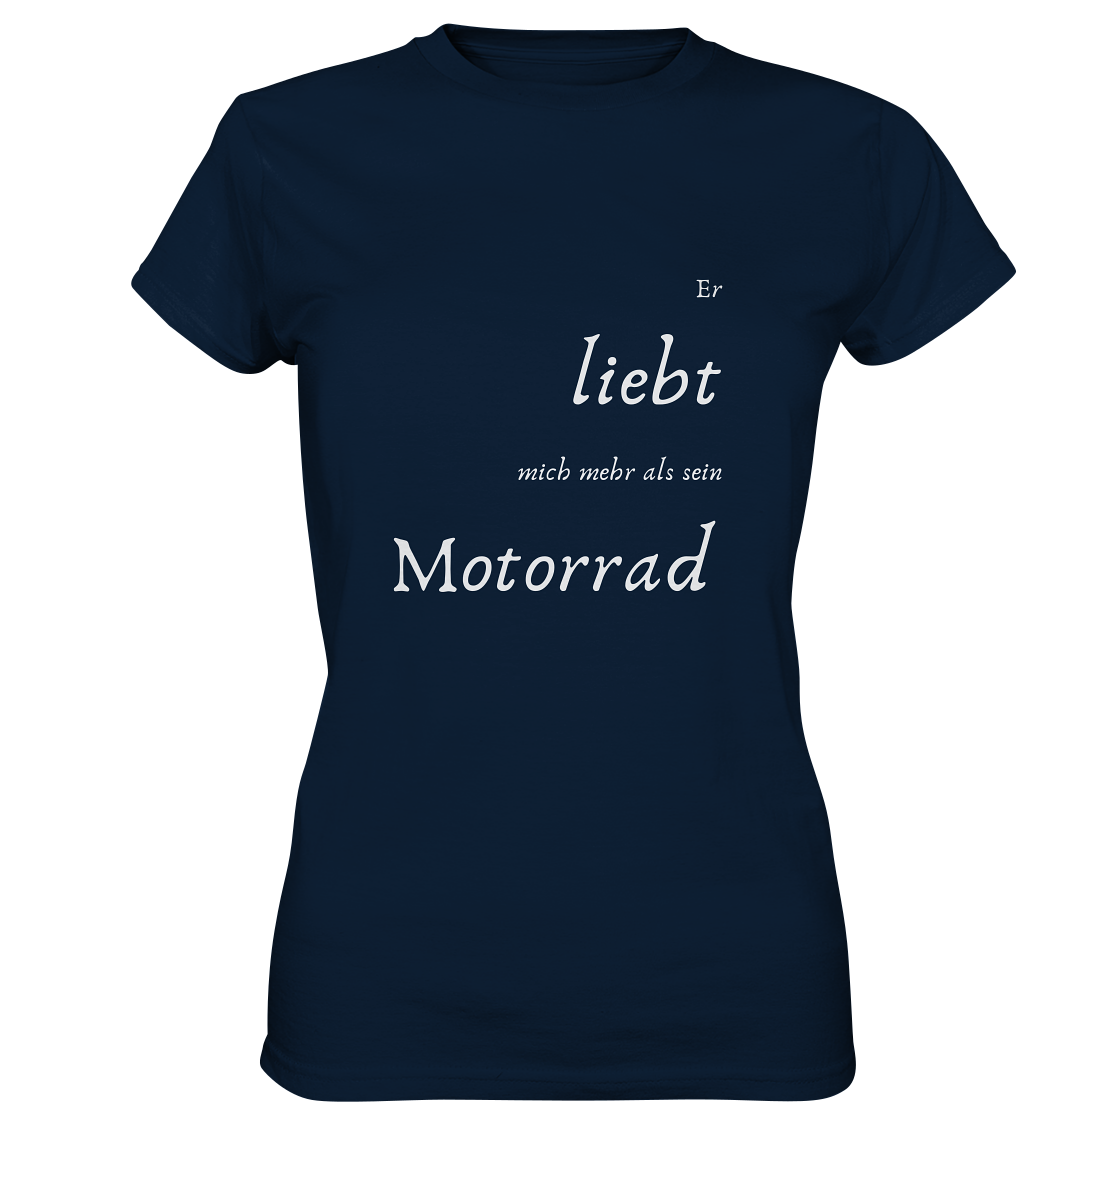 Damen-T-Shirt Rundhals mit beidseitigem weißen Aufdruck, vorn "Er liebt mich mehr als ihr Motorrad." hinten: "Glaub ich." dunkel blau